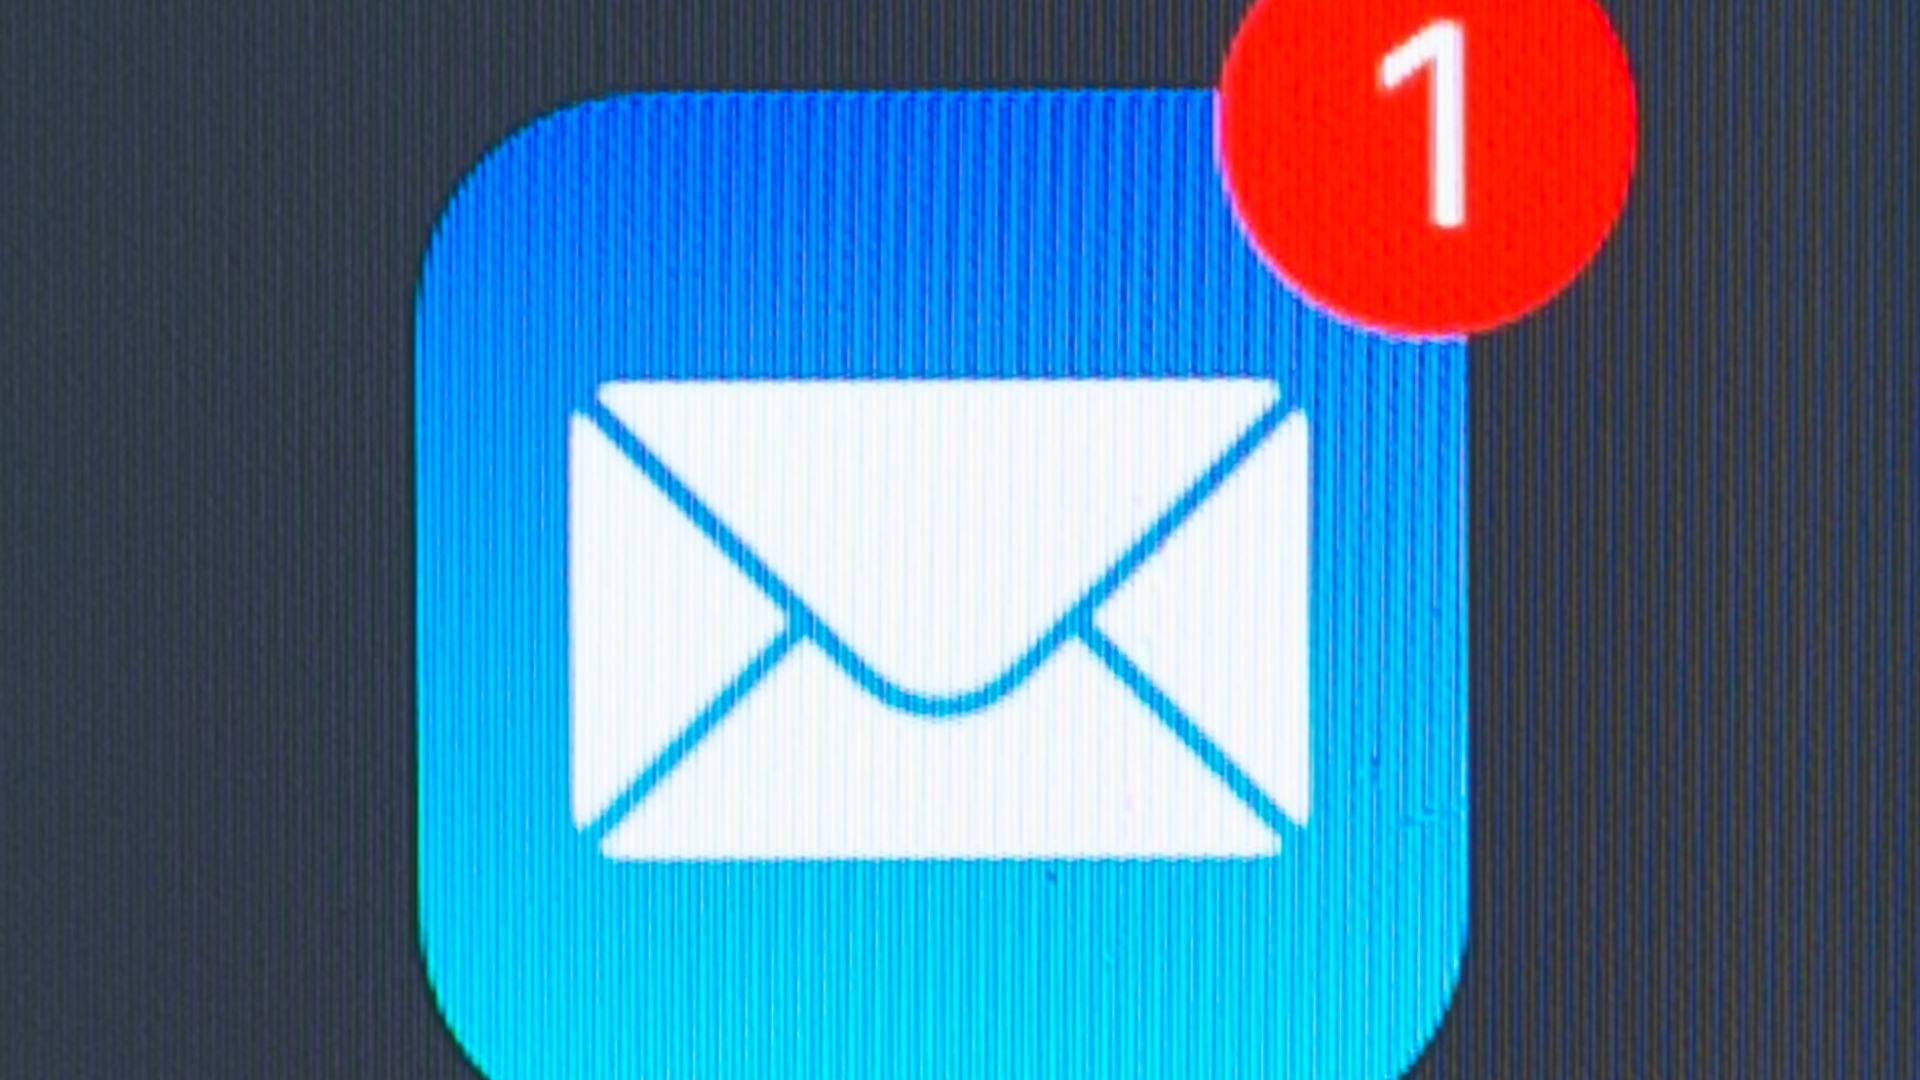 Anzeige einer neuen E-Mail in einem Mailprogramm | dpa